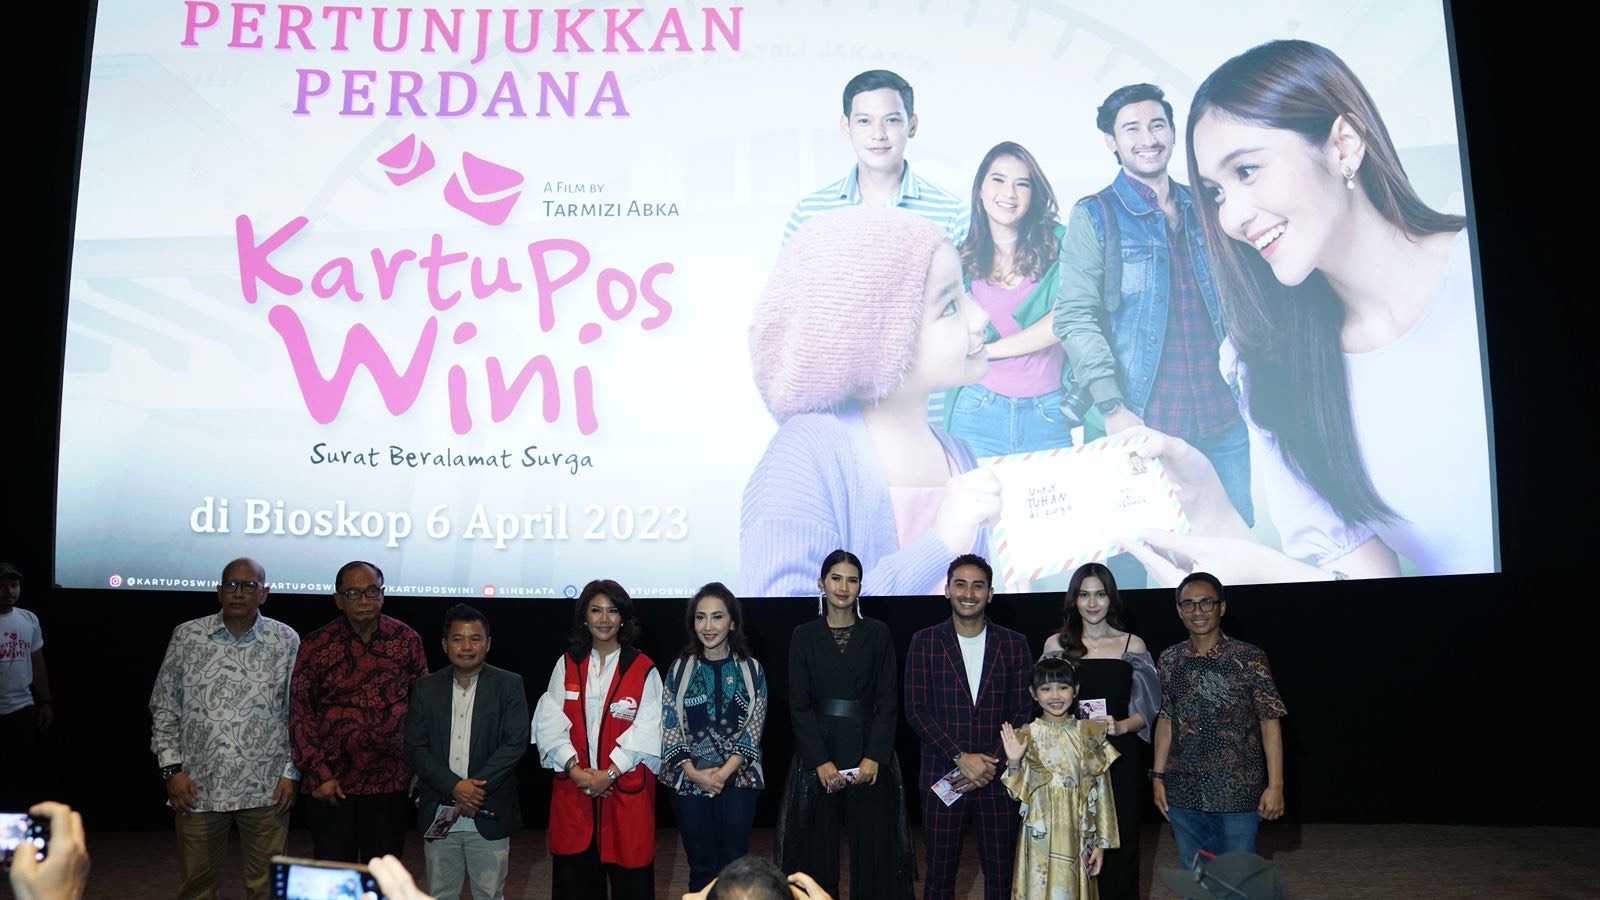 Tayang 6 April, Film Kartu Pos Wini Jadi Upaya Pos Indonesia Rangkul Milenial dan Gugah Kesadaran pada Kanker